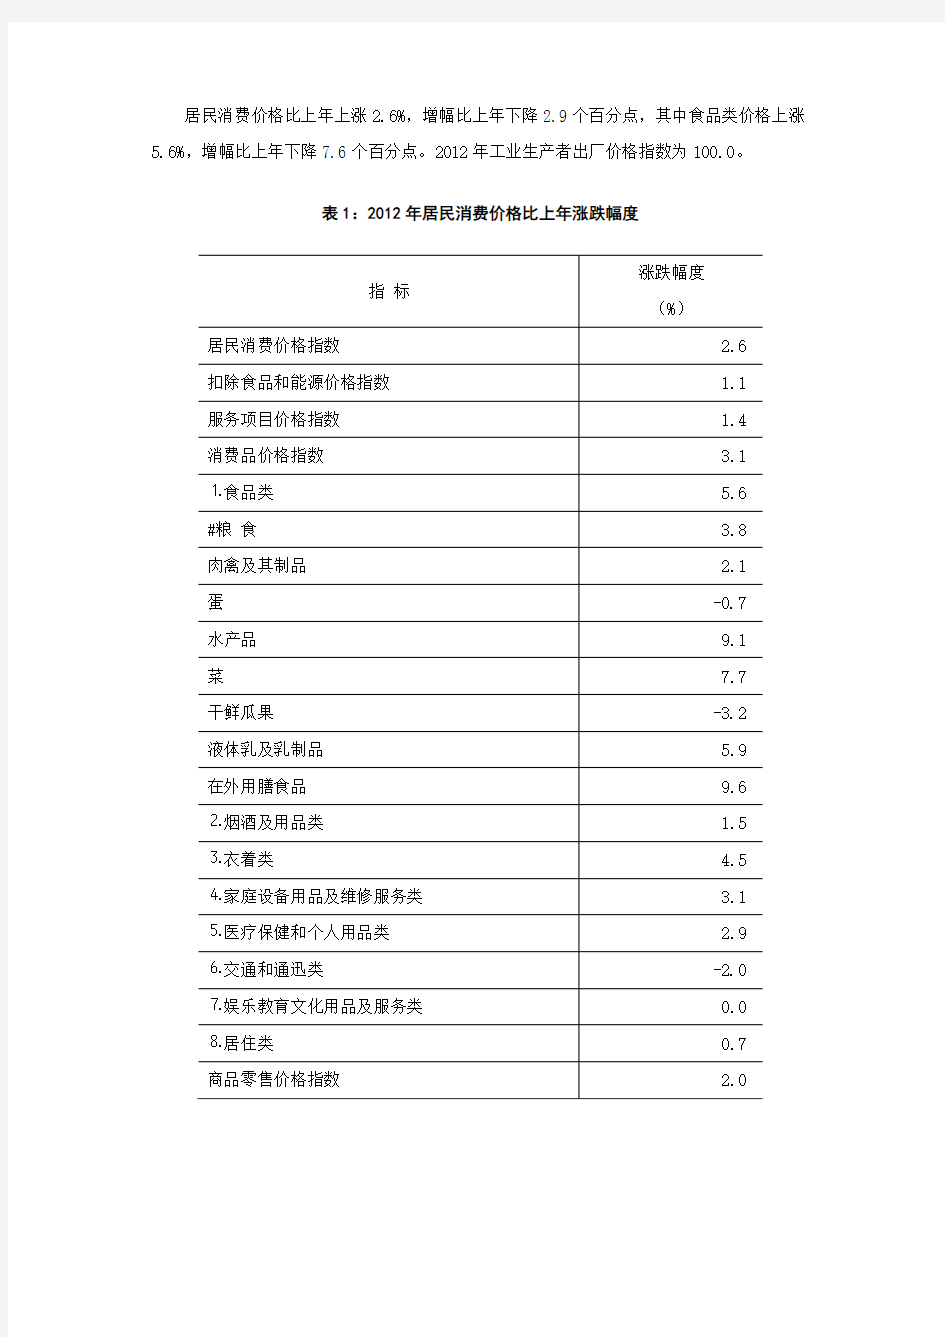 2012年贵阳市国民经济和社会发展统计公报